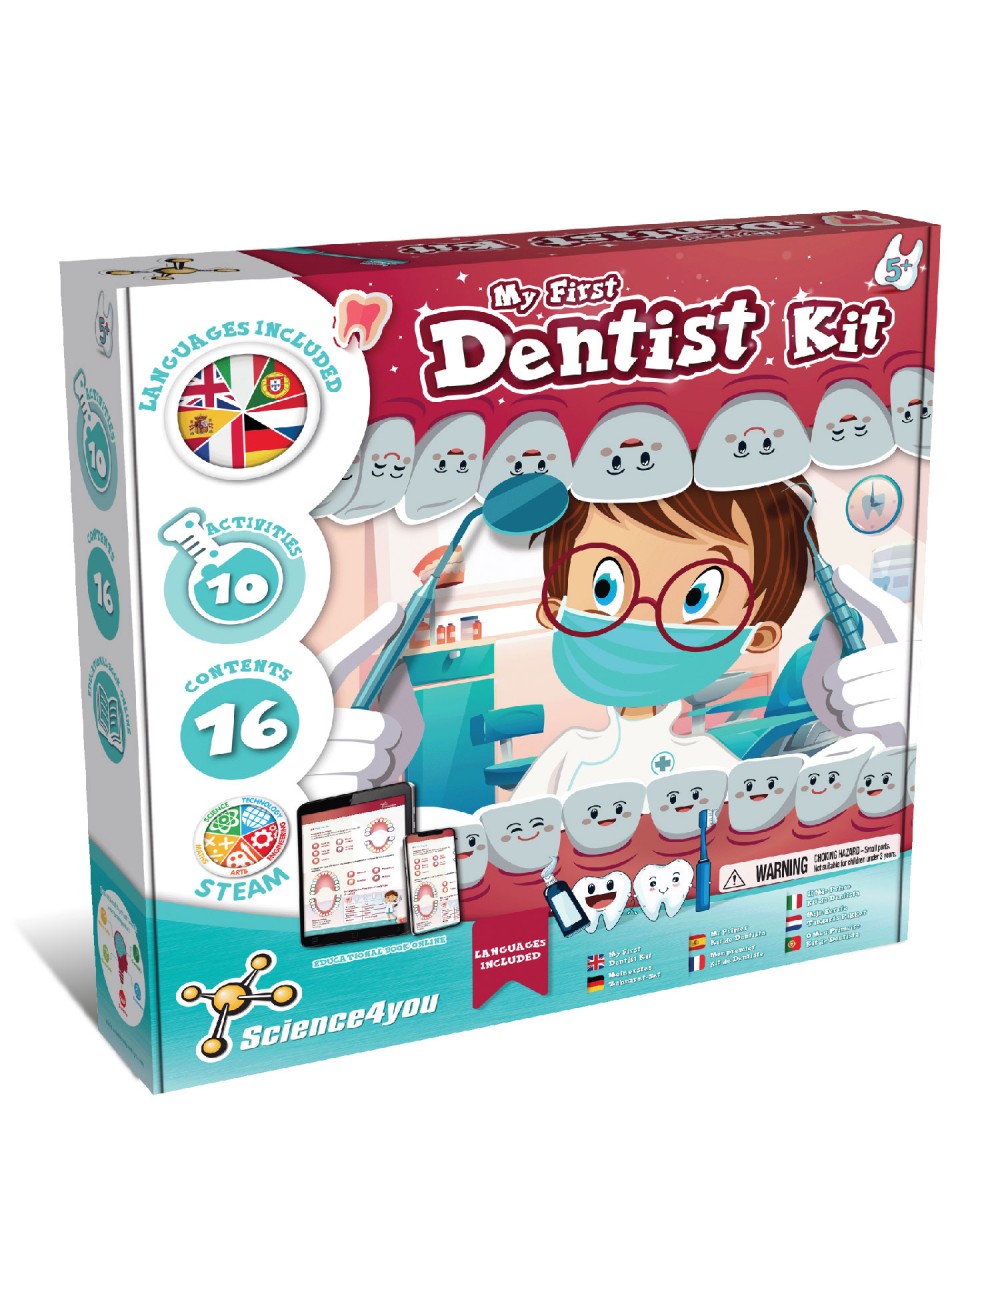 Jouets et Jeux Kit de Jouet de Dentiste pour les Enfants 28/23pcs / Set  Faire Jouer les Outils de Dentiste Ensemble pour Enfant Yjy 